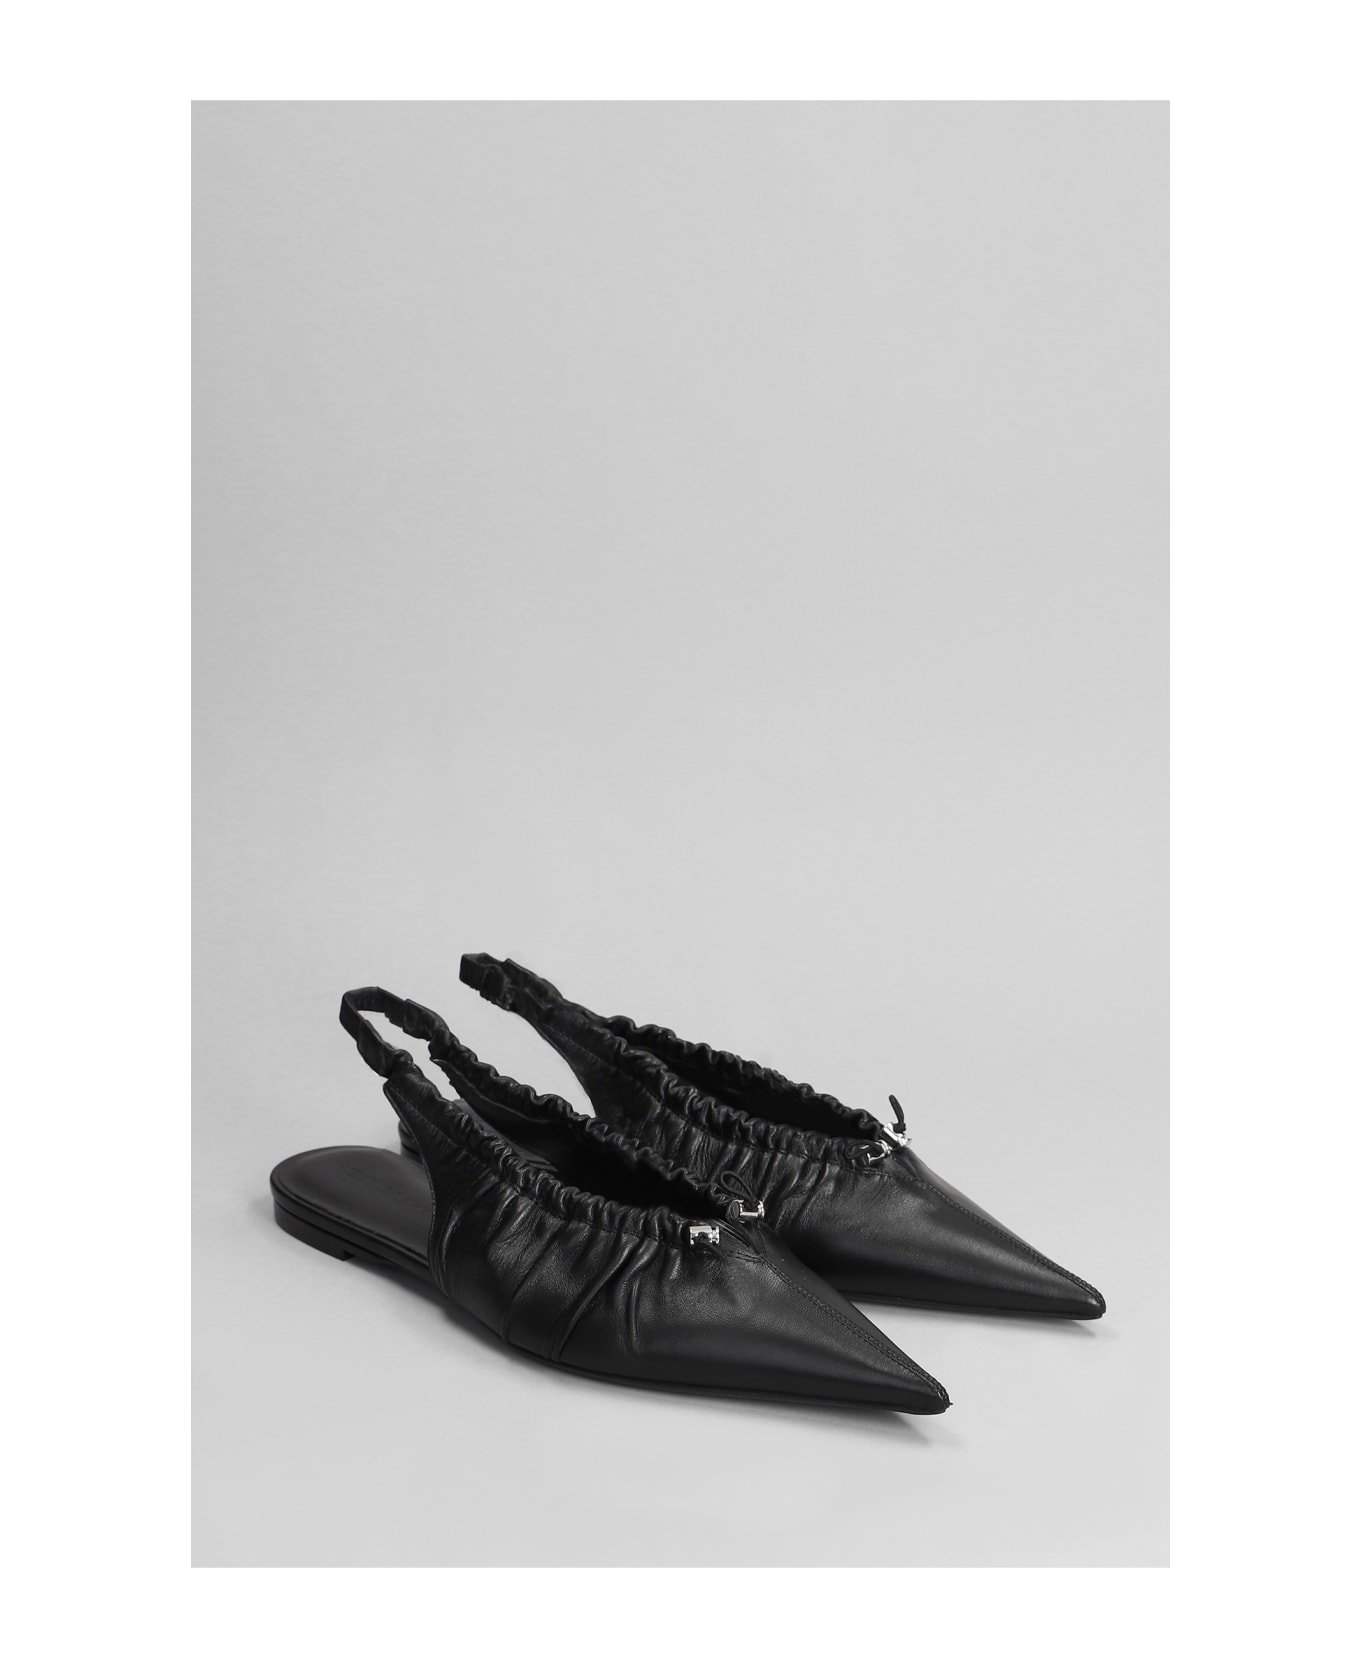 Nensi Dojaka Ballet Flats In Black Leather - black フラットシューズ